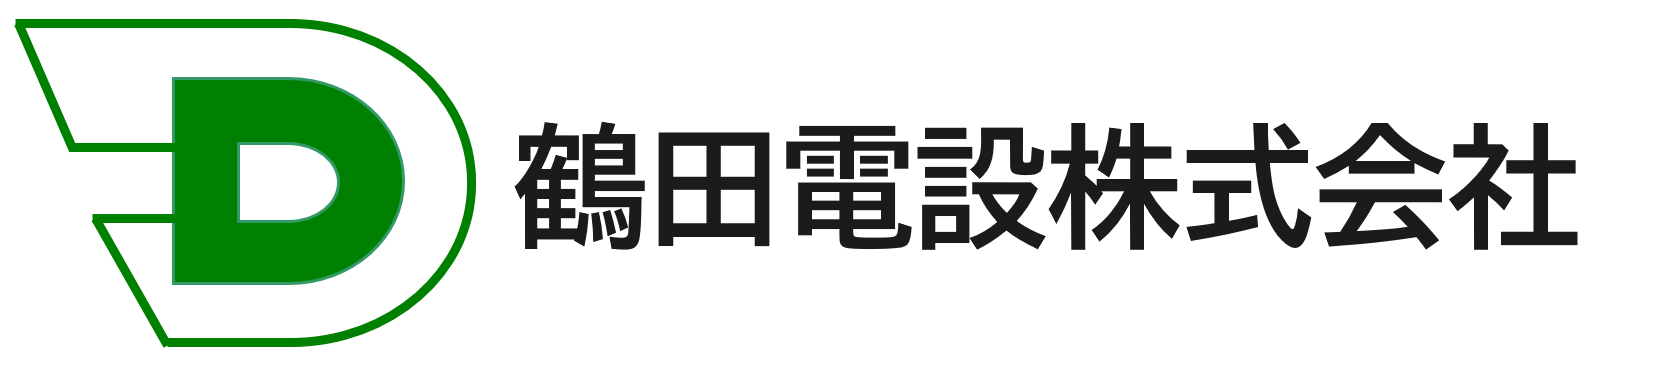 鶴田電設株式会社